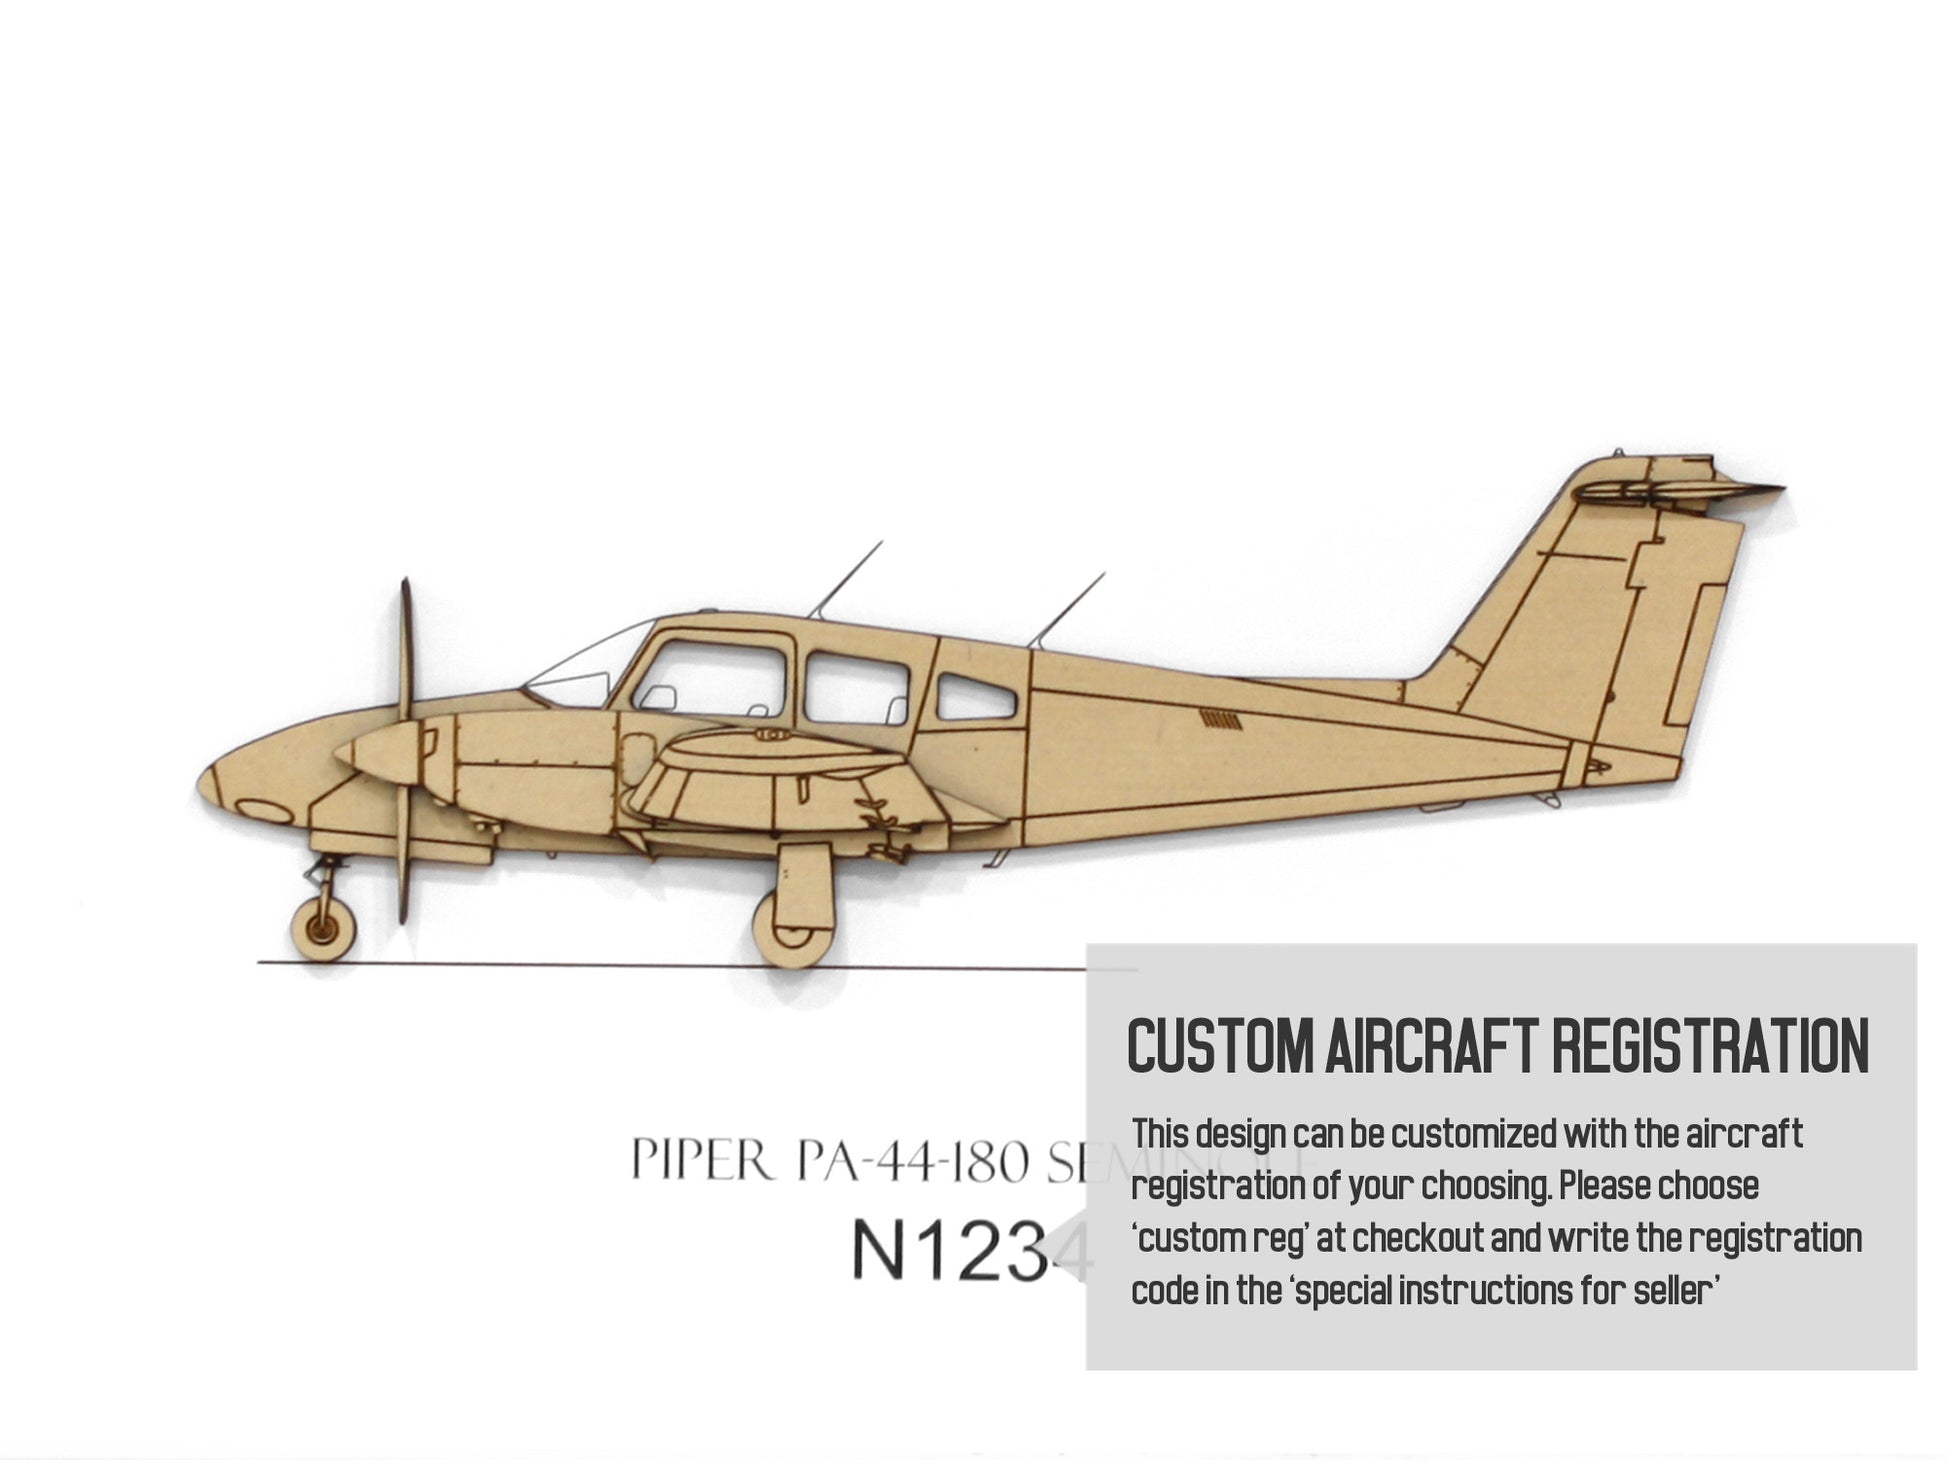 Piper PA-44-180 Seminole custom aviation art